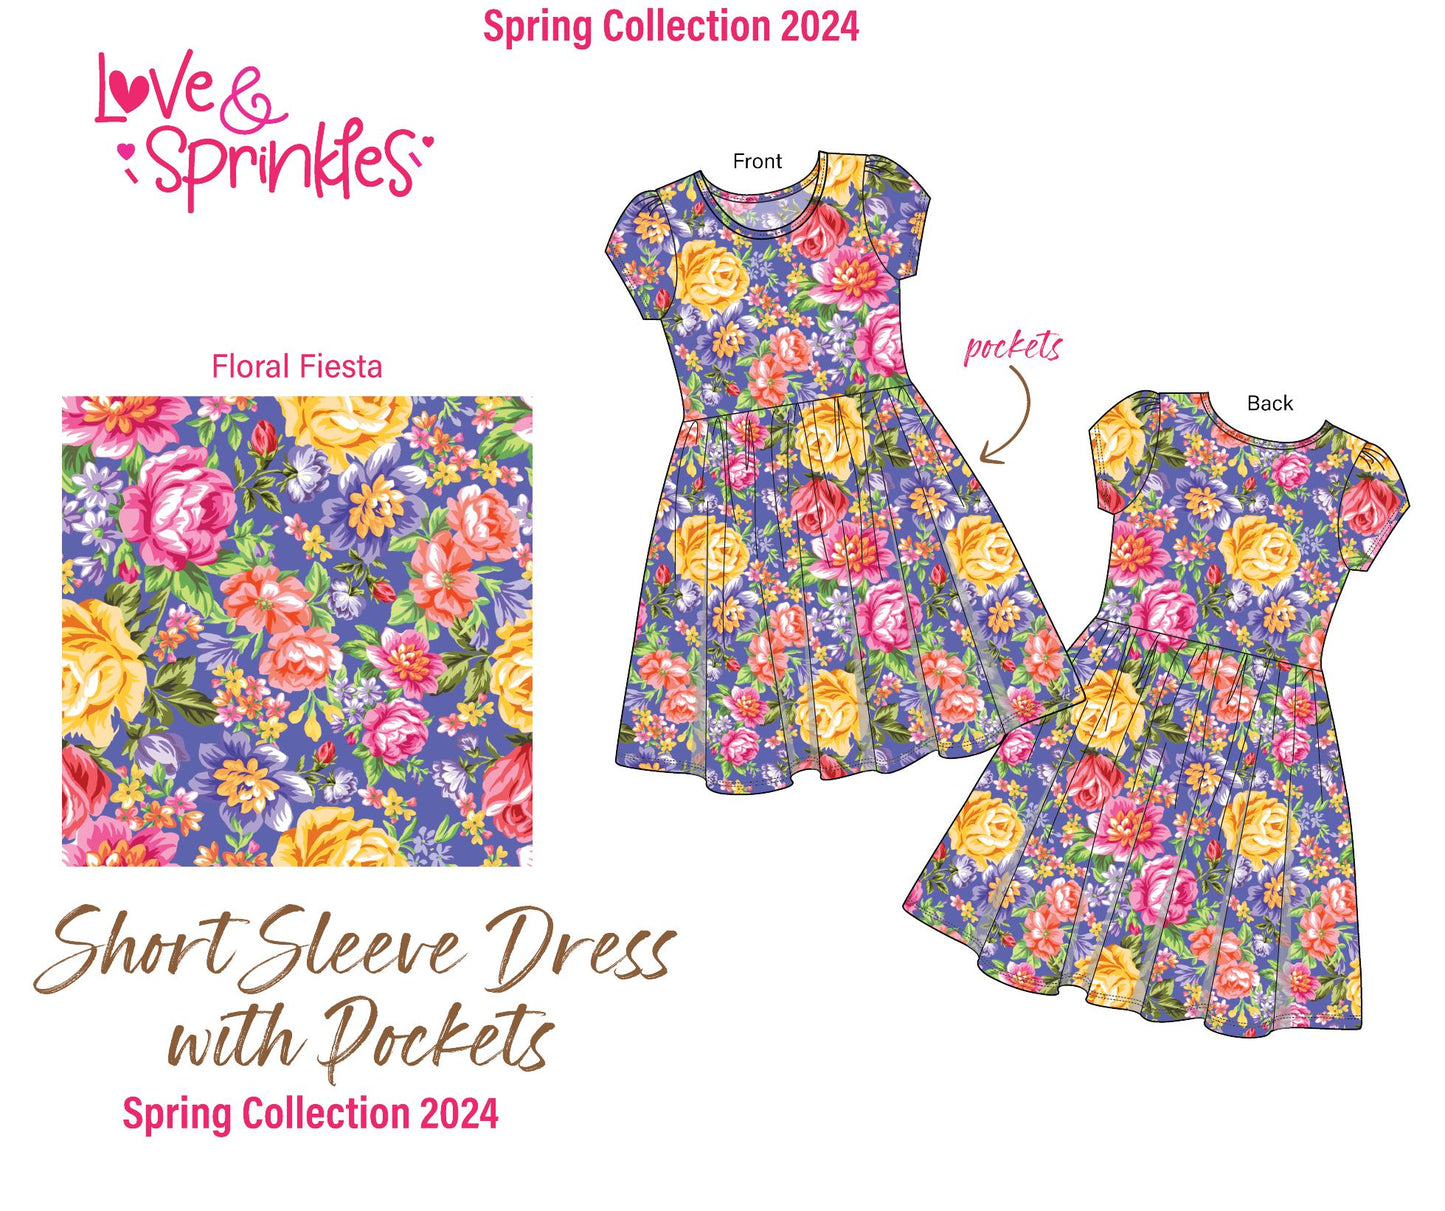 Love & Sprinkles Floral Fiesta Short Sleeve Dress